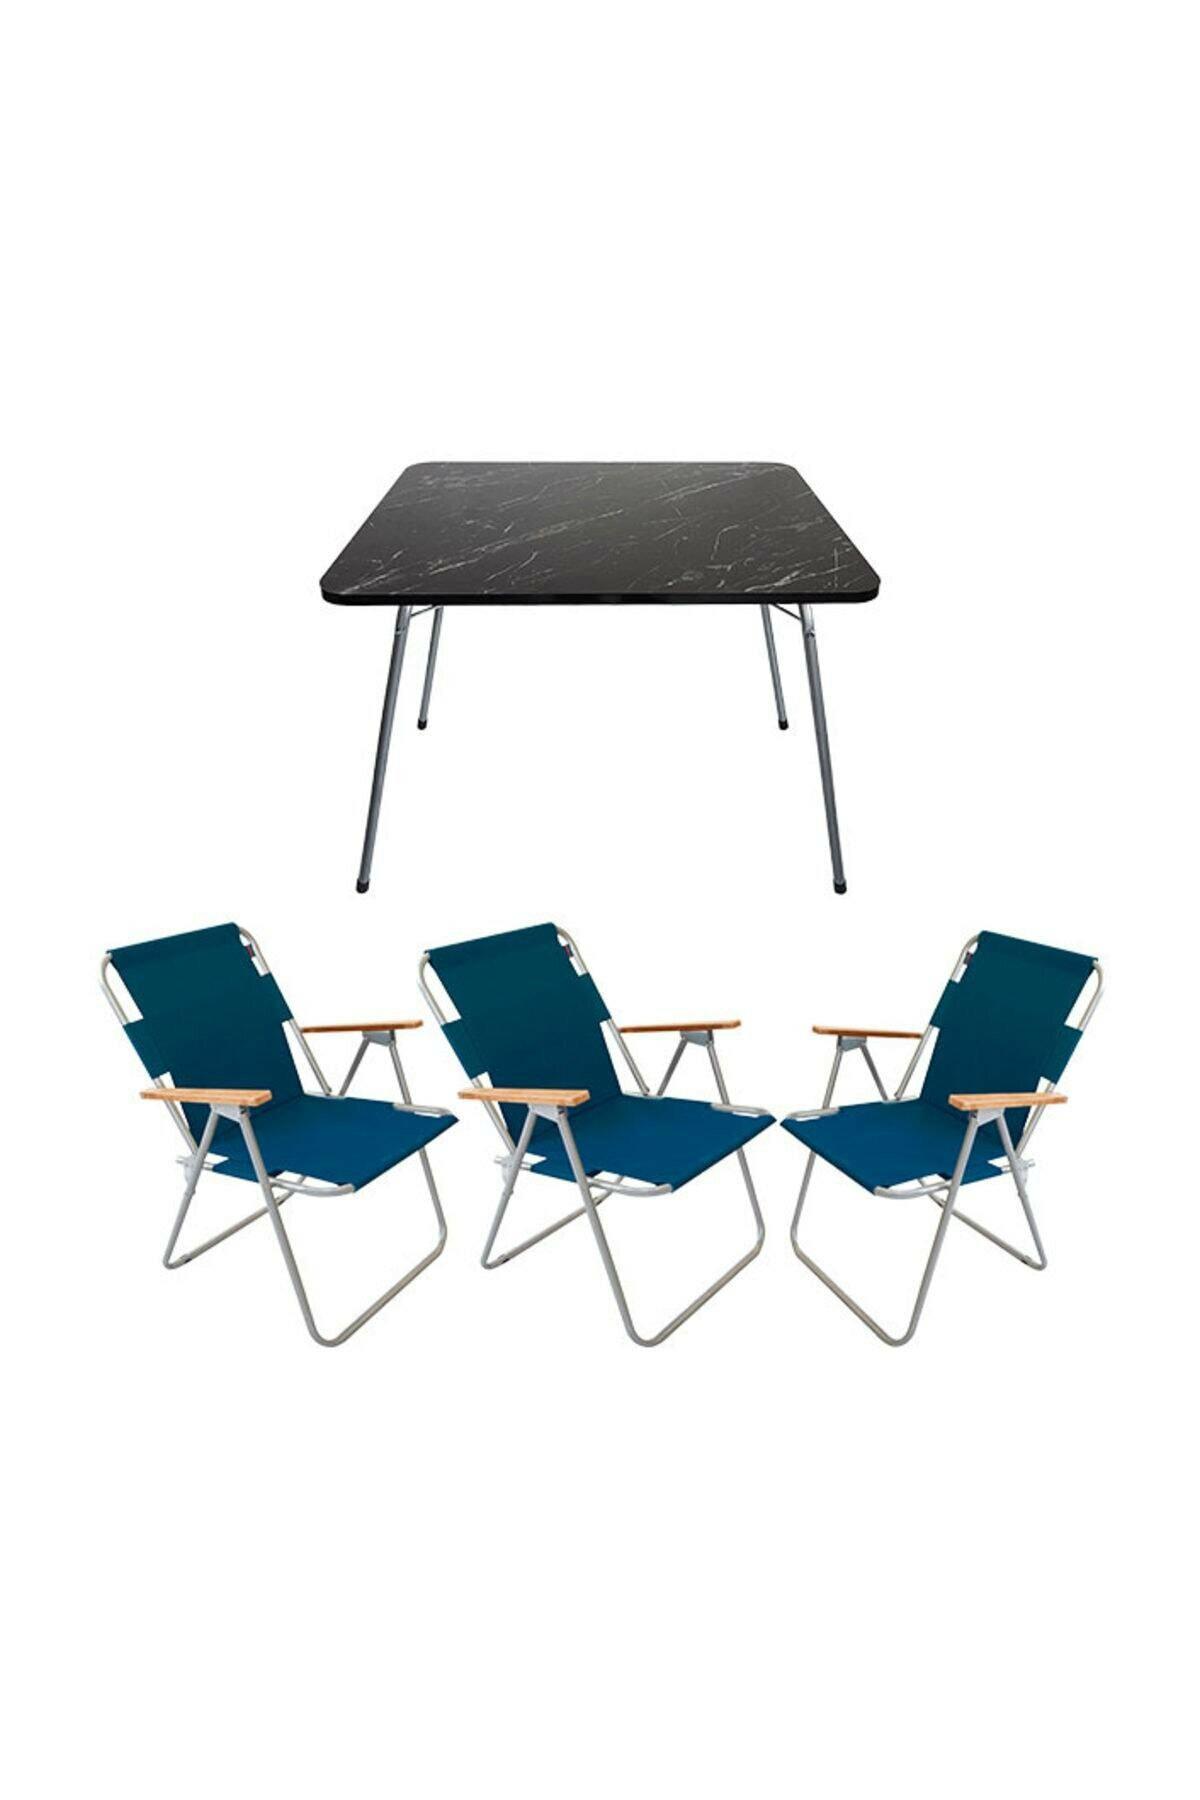 Bofigo 60 x 80 cm Tabureli Çantalı Dikdörtgen Granit Katlanır Kamp Masası Mavi + 3 Adet Katlanır Sandalye